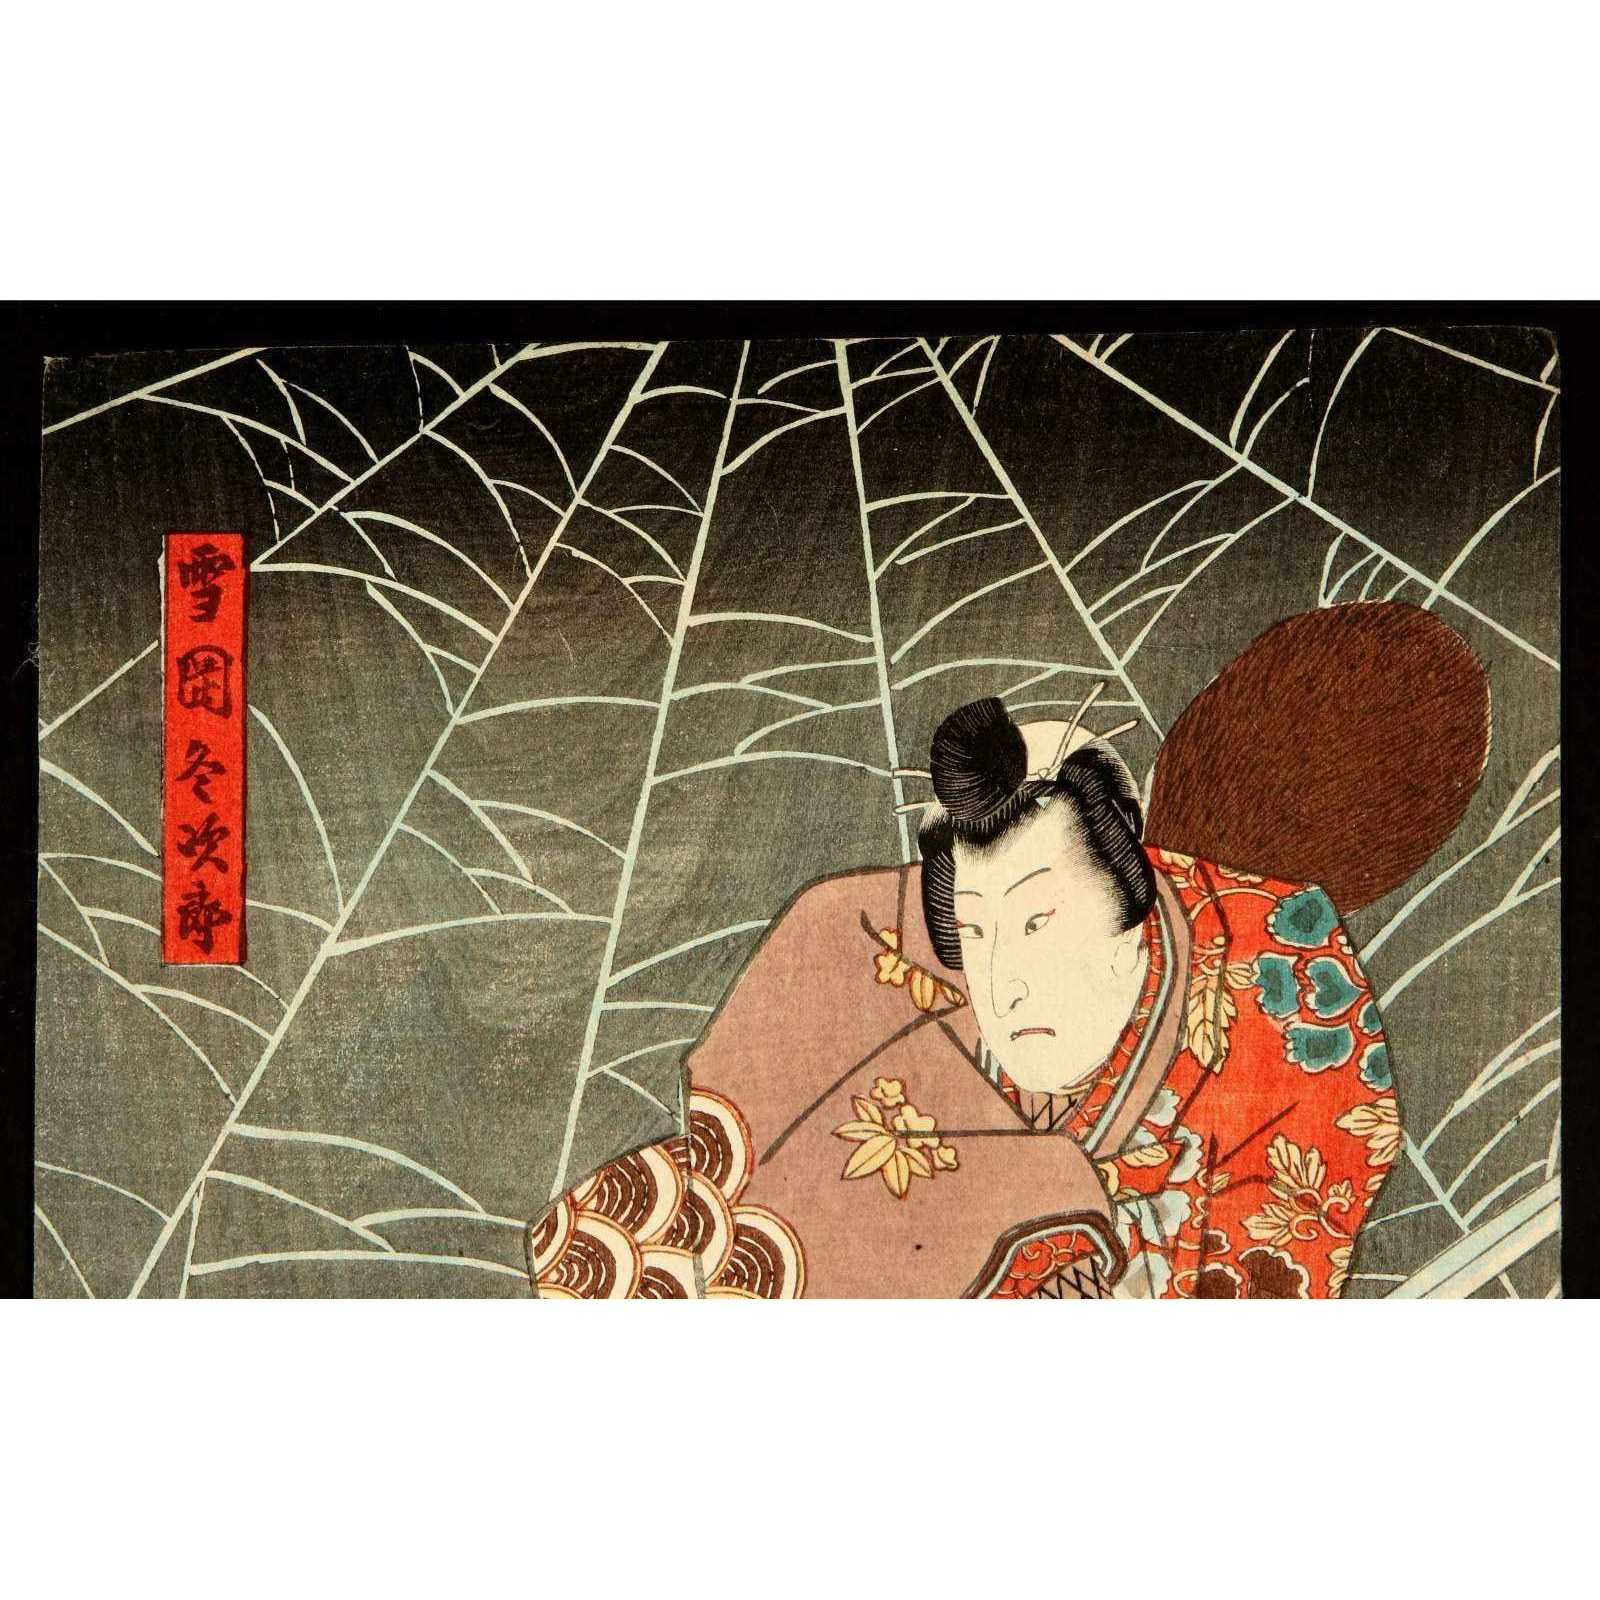 AW10-001: KUNISADA UTAGAWA WOODBLOCK 'ACTORS' TRIPTYCH